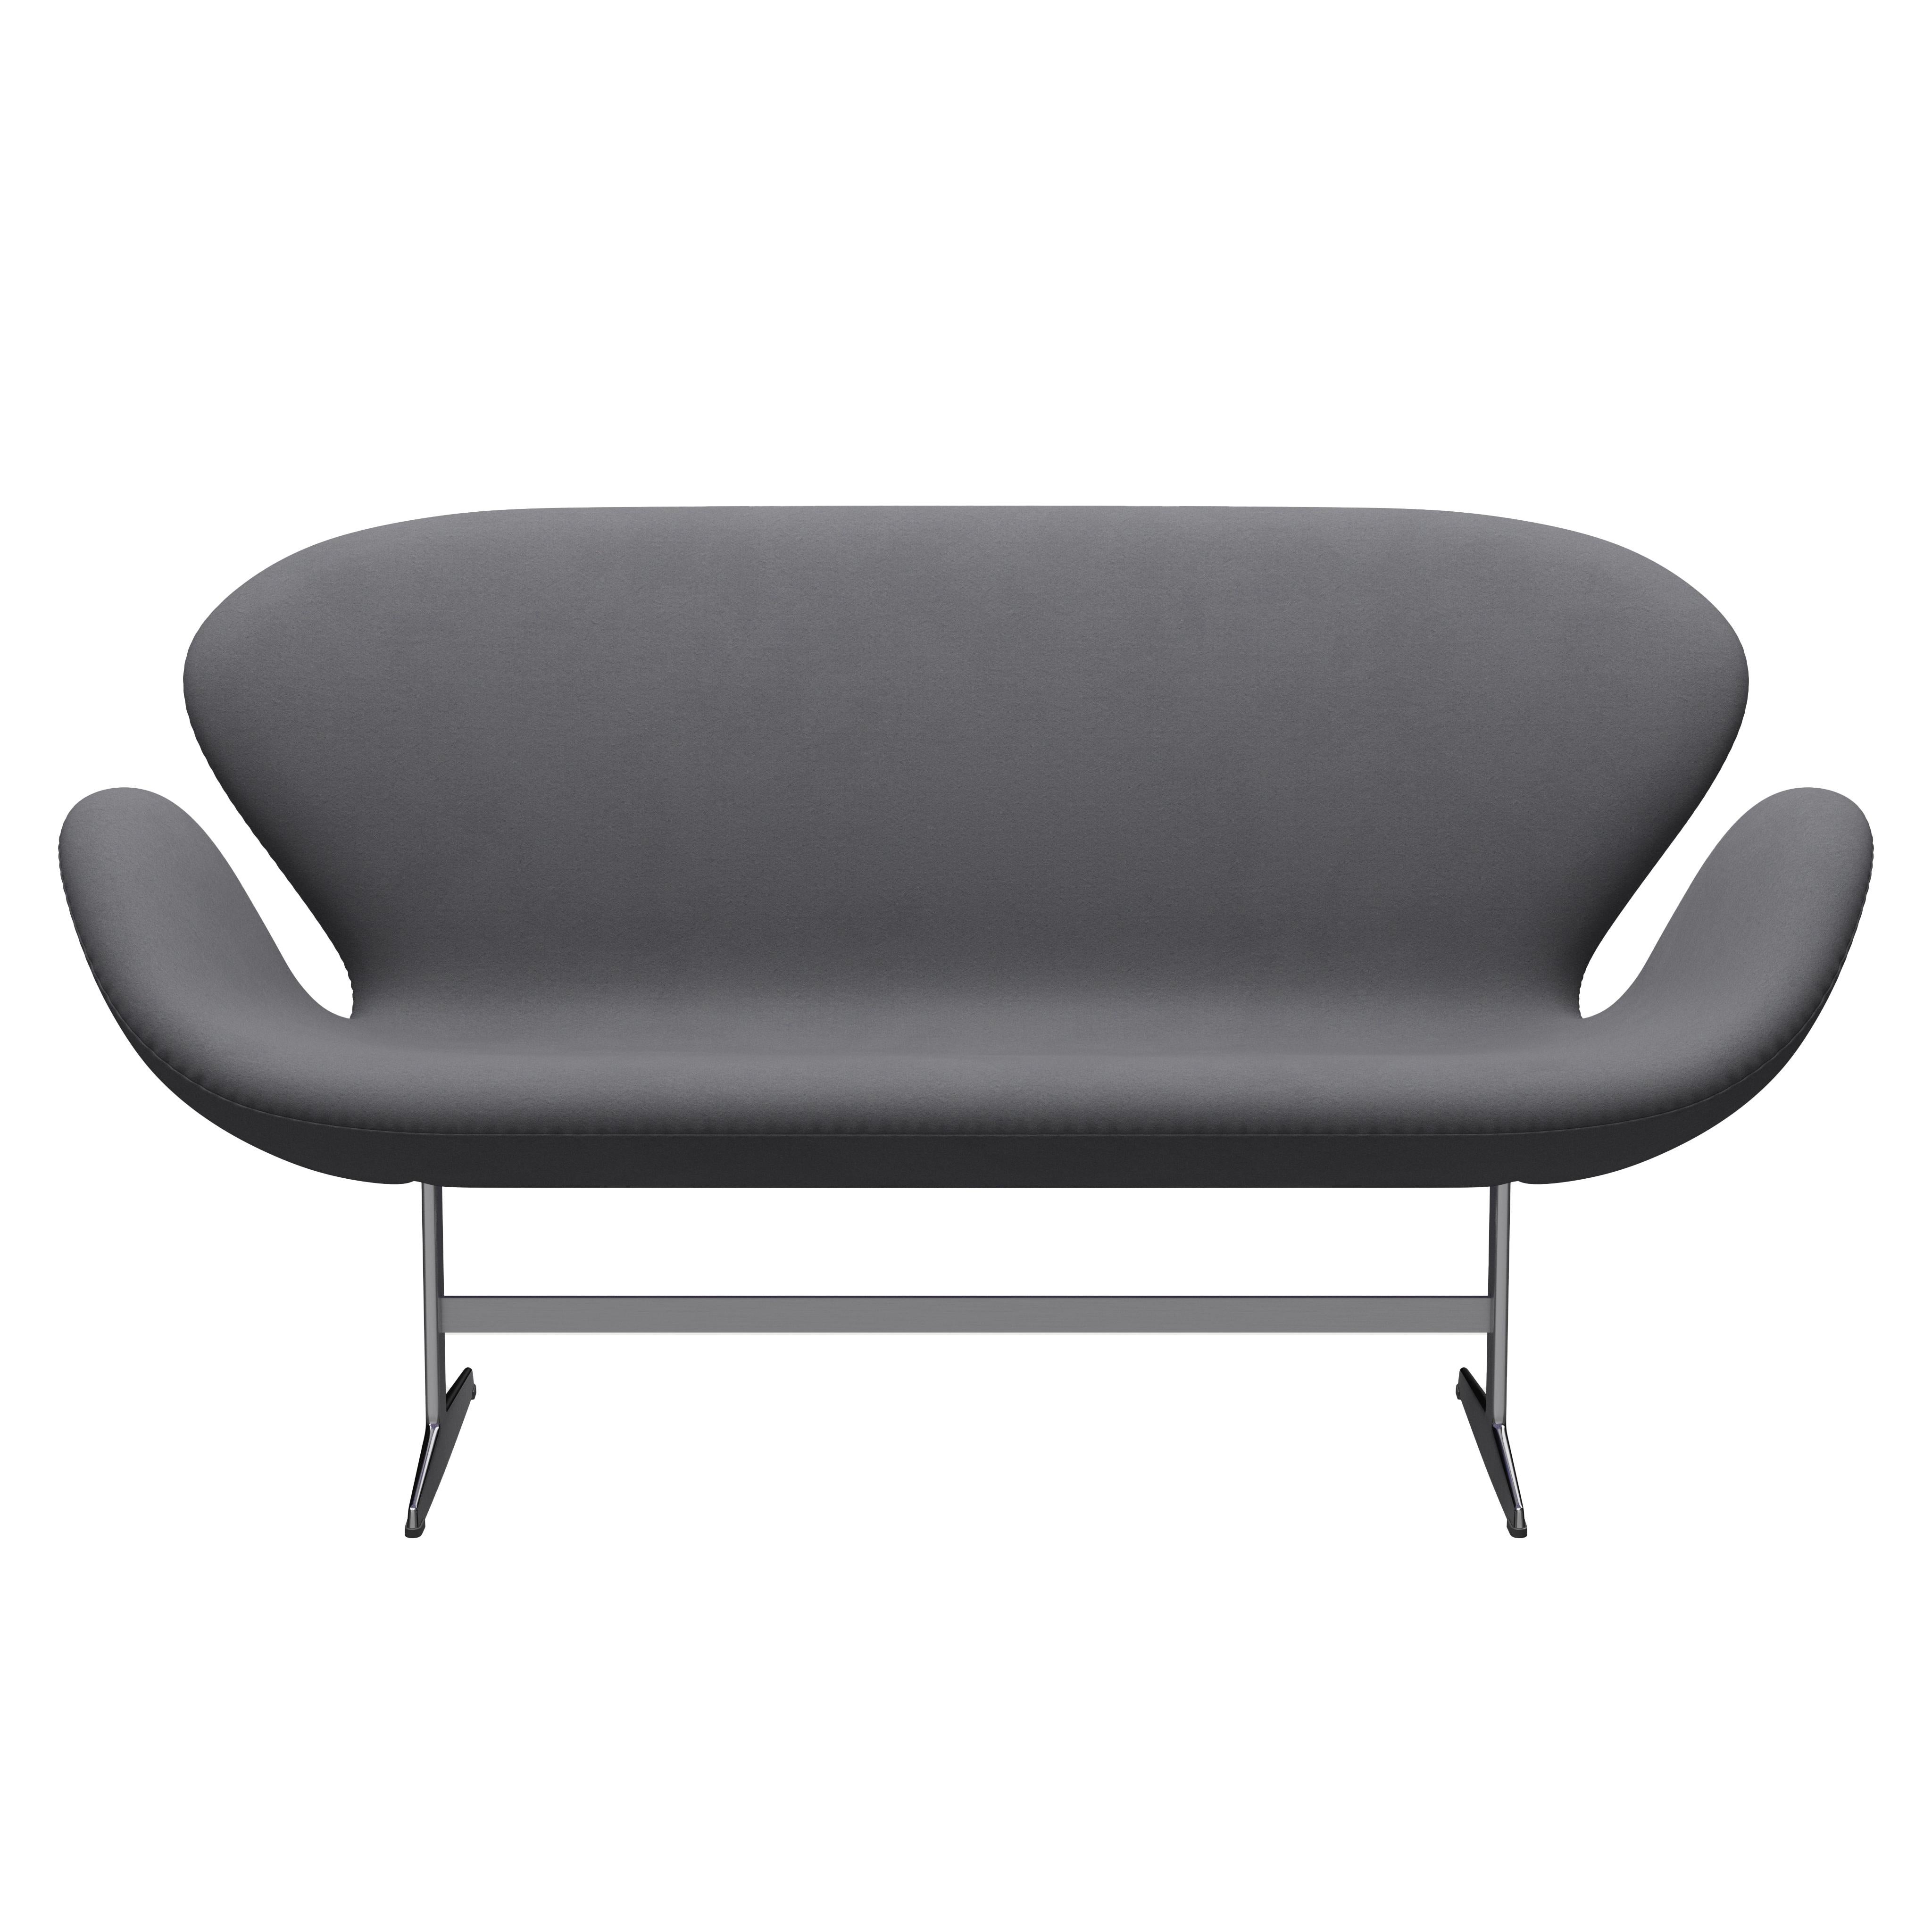 Arne Jacobsen 'Swan' Sofa for Fritz Hansen in Fabric Upholstery (Cat. 3) For Sale 5